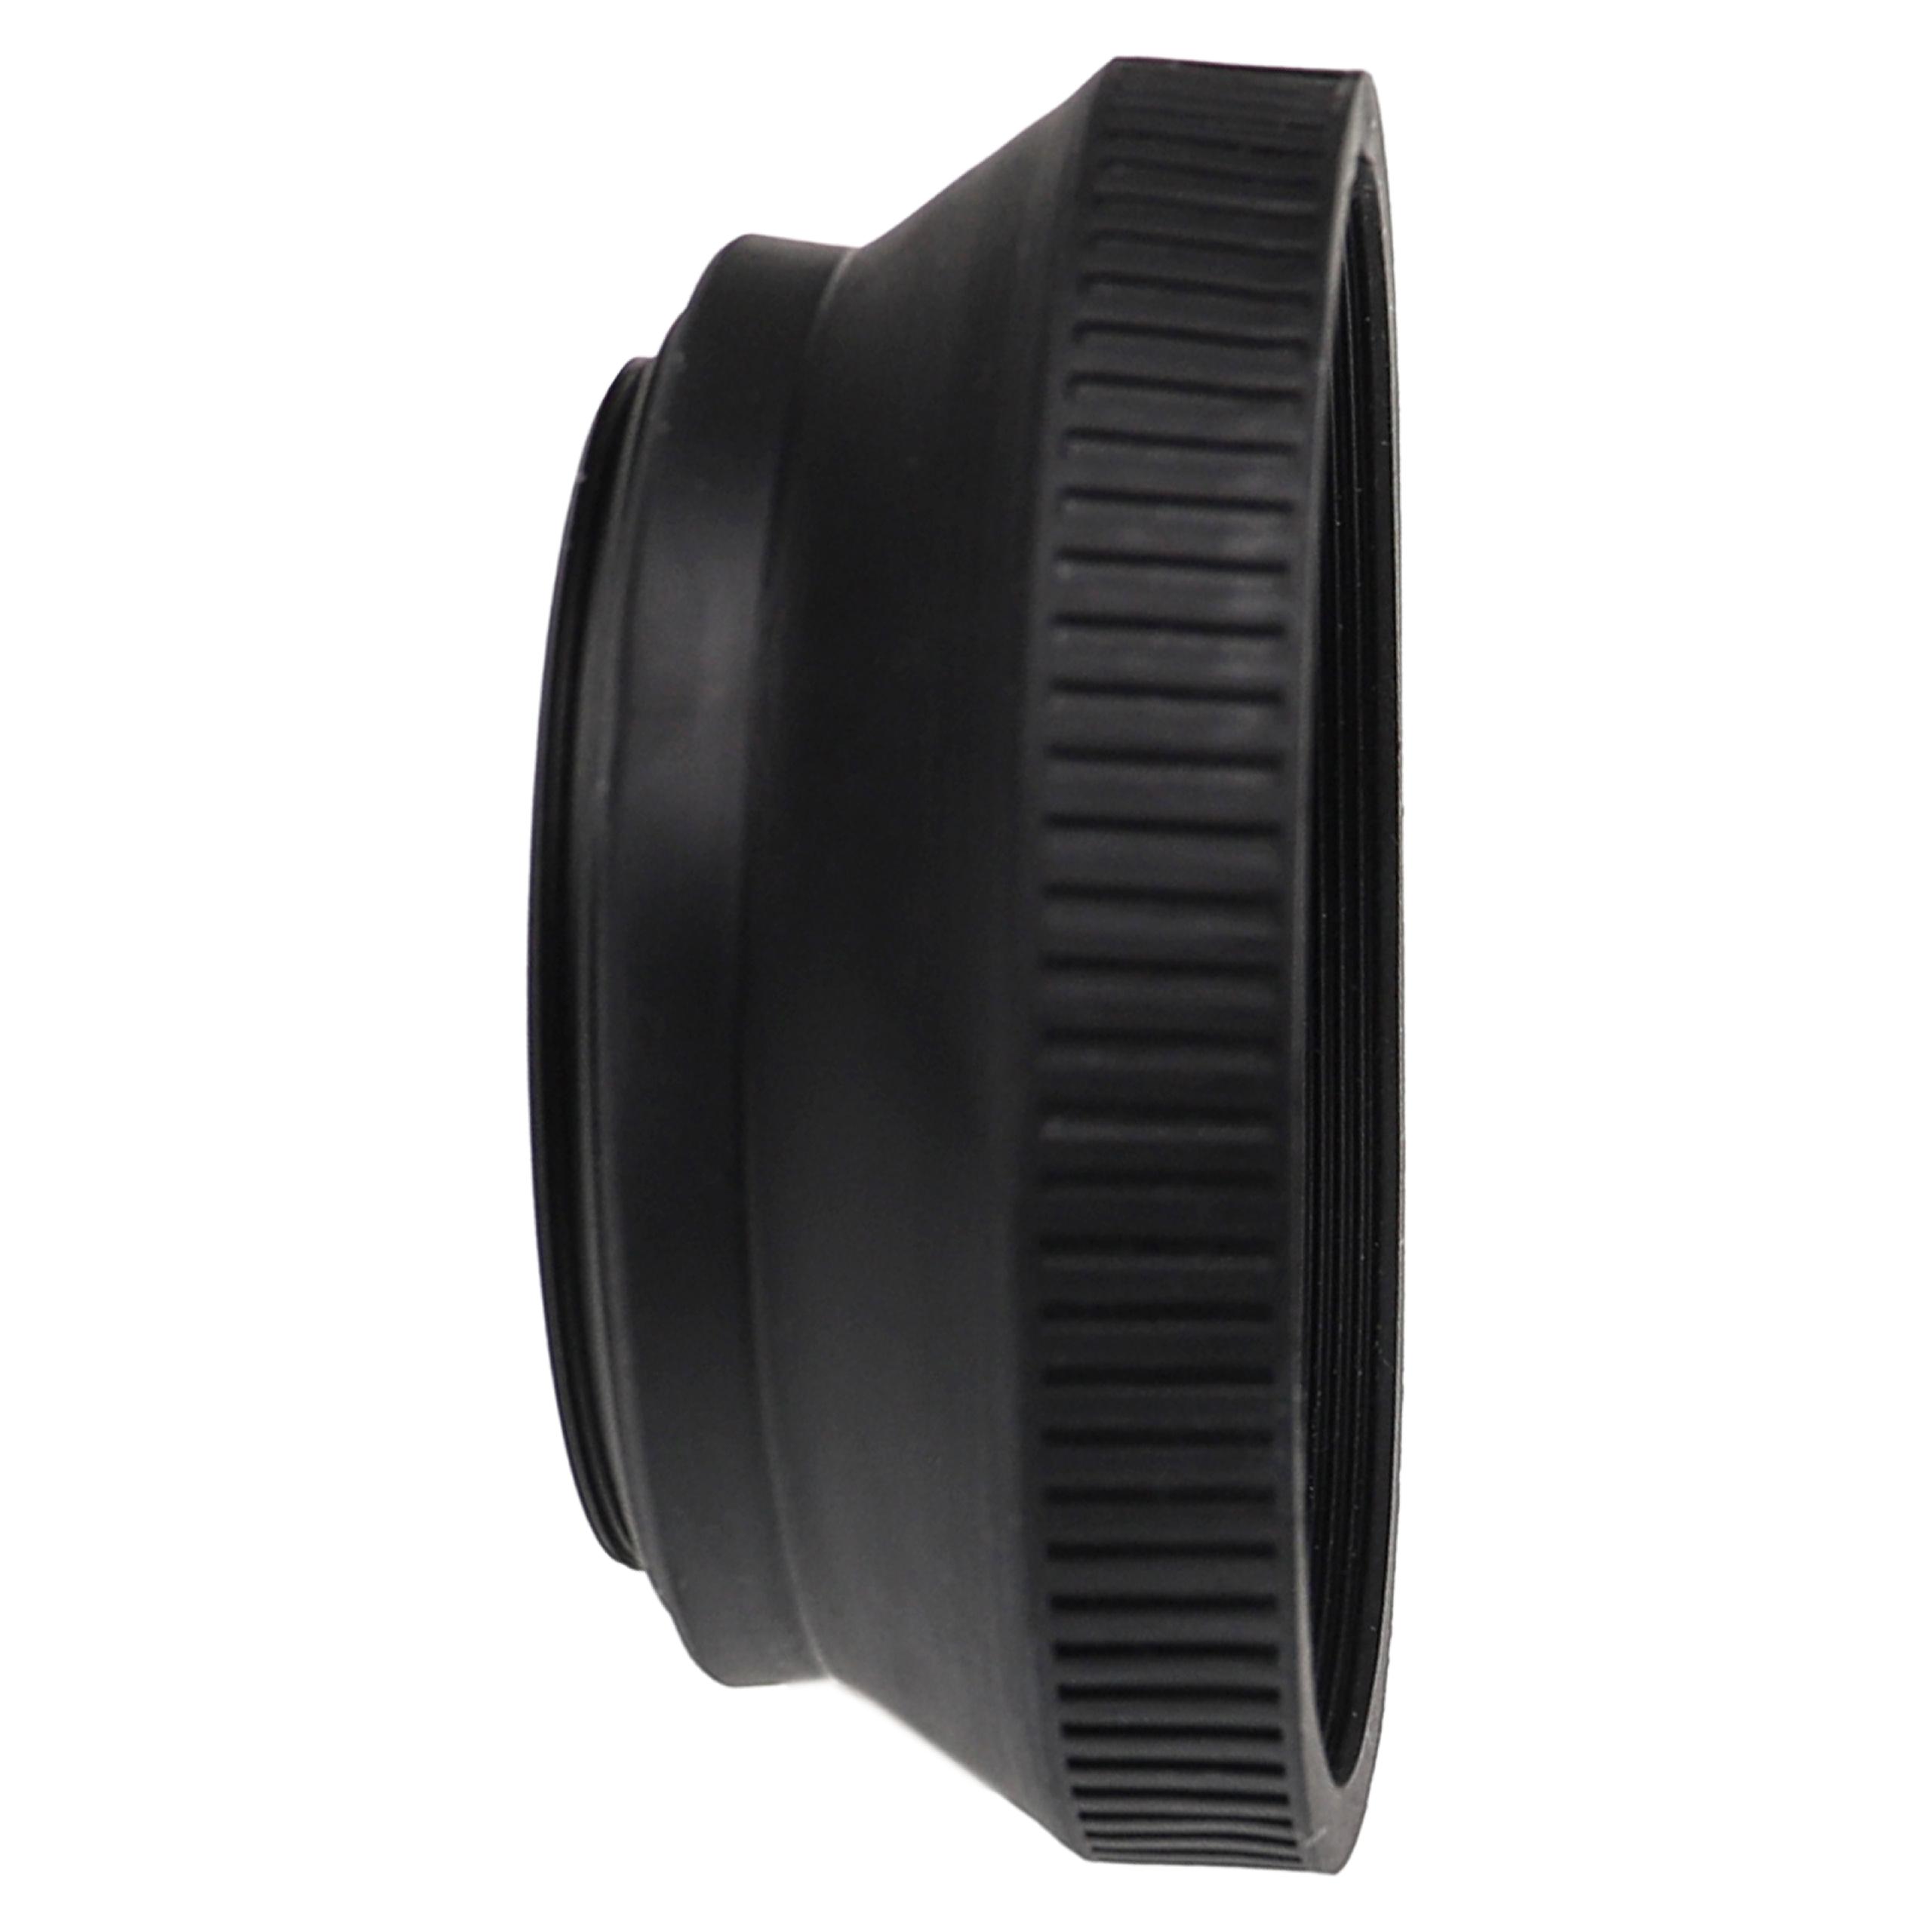 Gegenlichtblende für Leica, Panasonic, Objektive Objektive mit 46 mm Durchmesser 